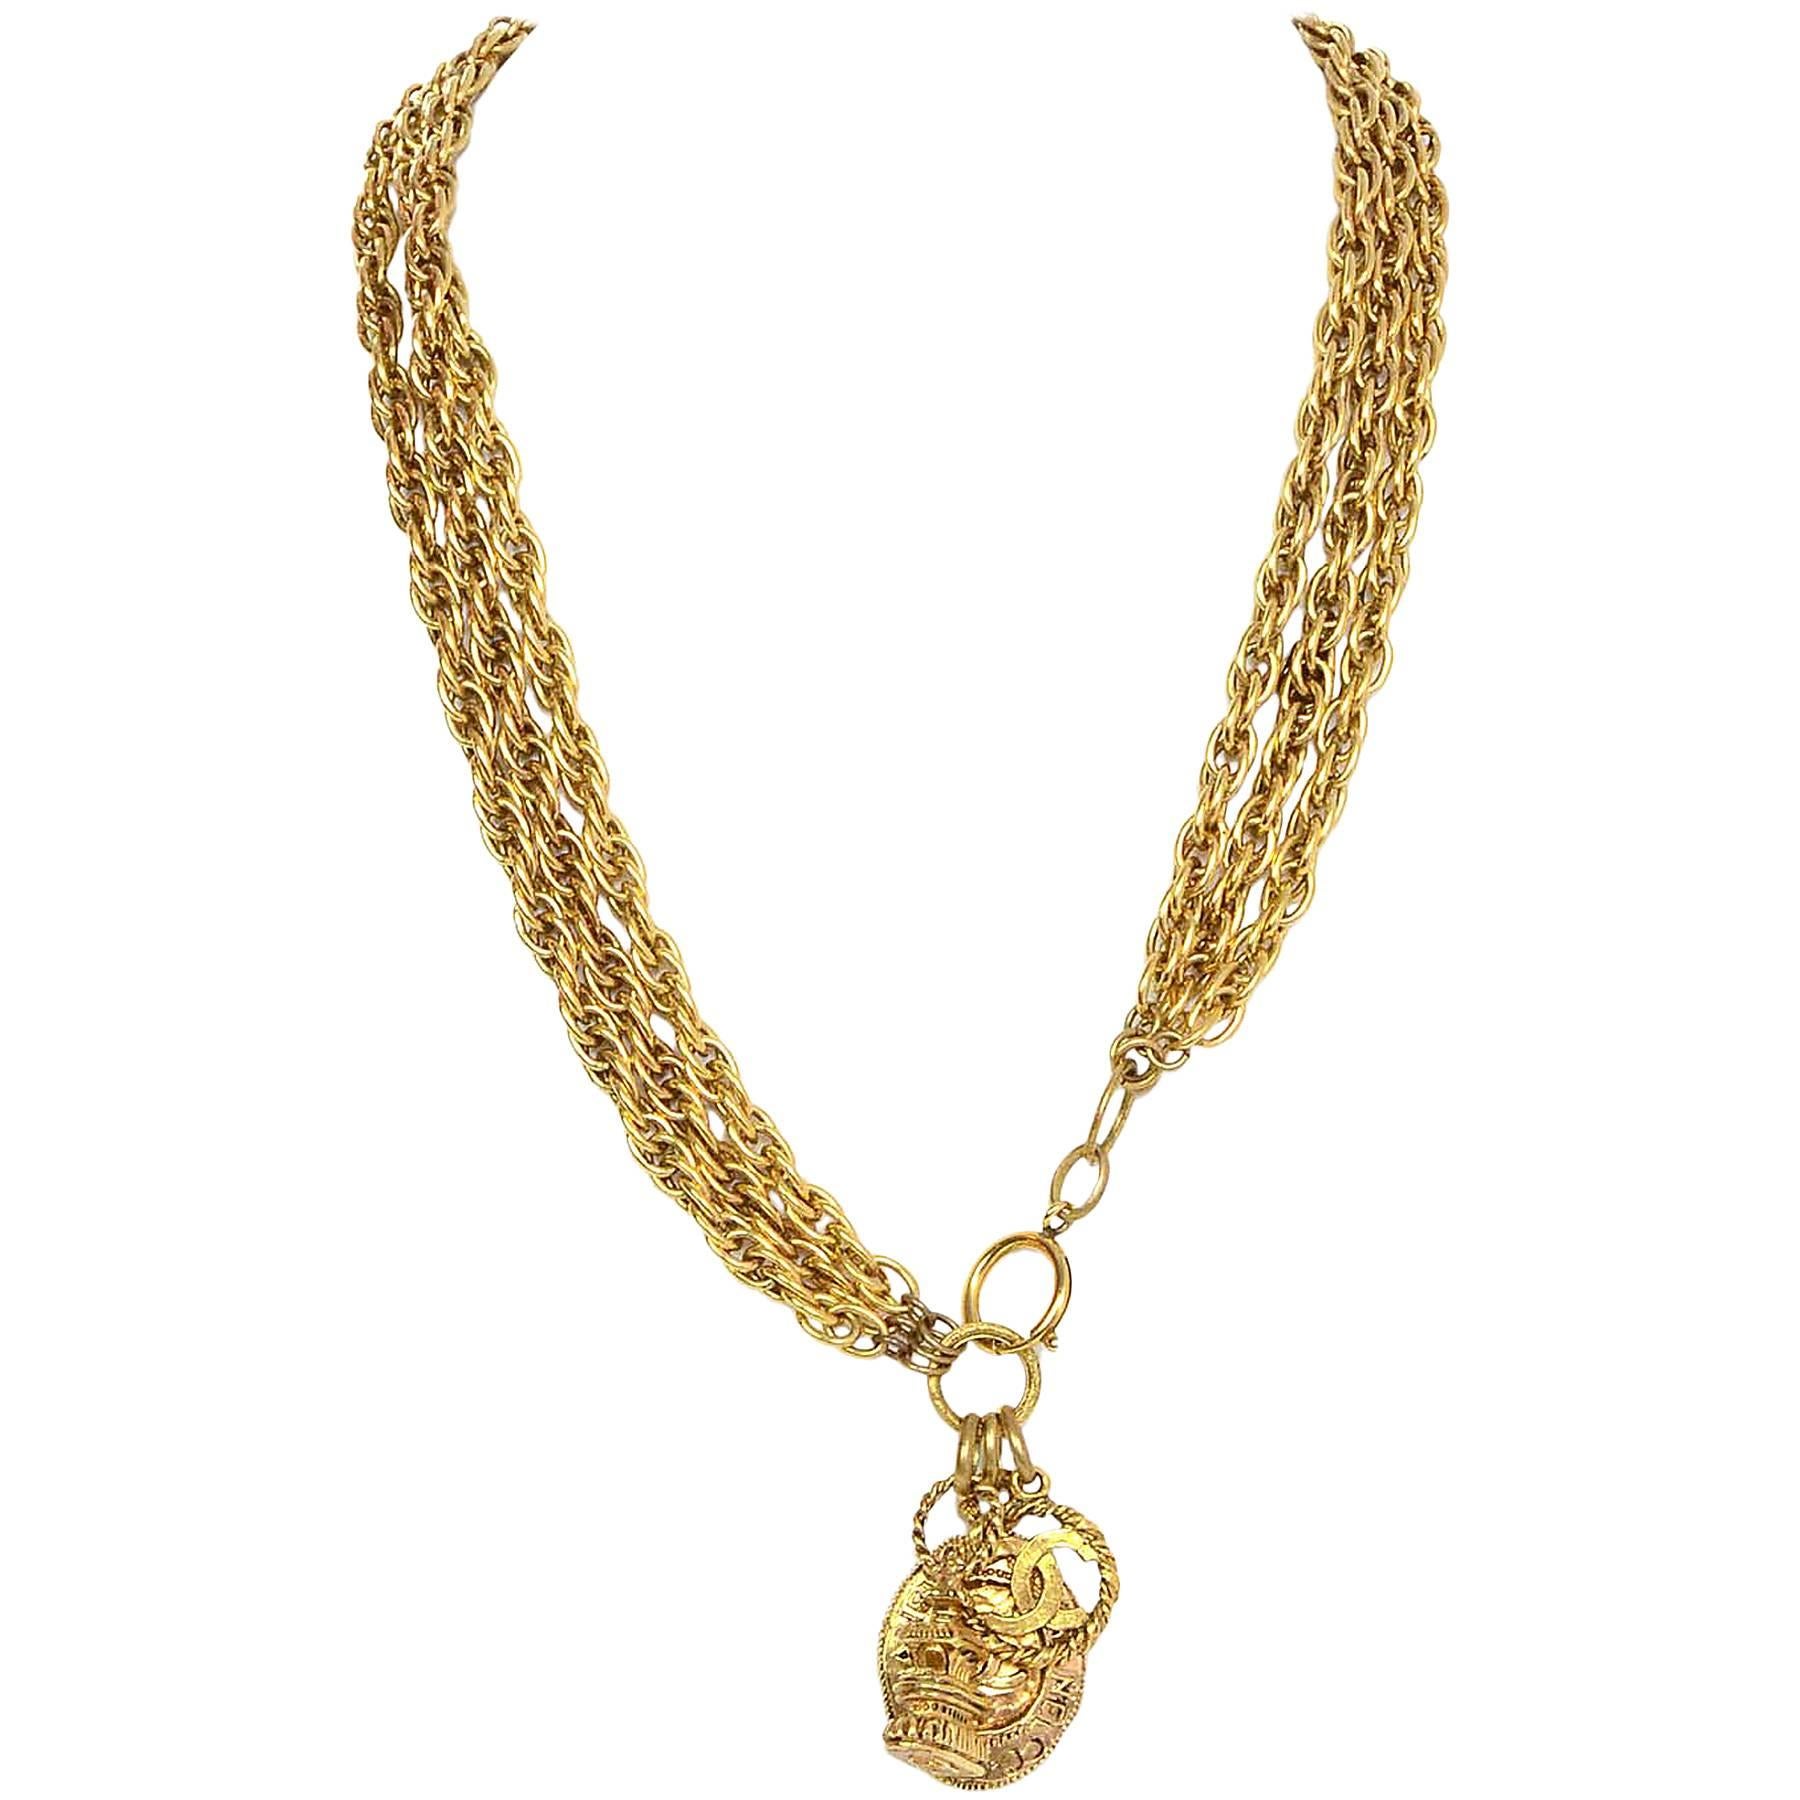 Chanel Goldfarbener mehrreihiger Gürtel/Halskette

Mit drei verschiedenen Anhängern, kann als Gürtel oder Halskette getragen werden

Hergestellt in: Frankreich
Jahr der Produktion: 1970er-1980er Jahre
Farbe: Goldtone
Materialien: Metall
Verschluss: